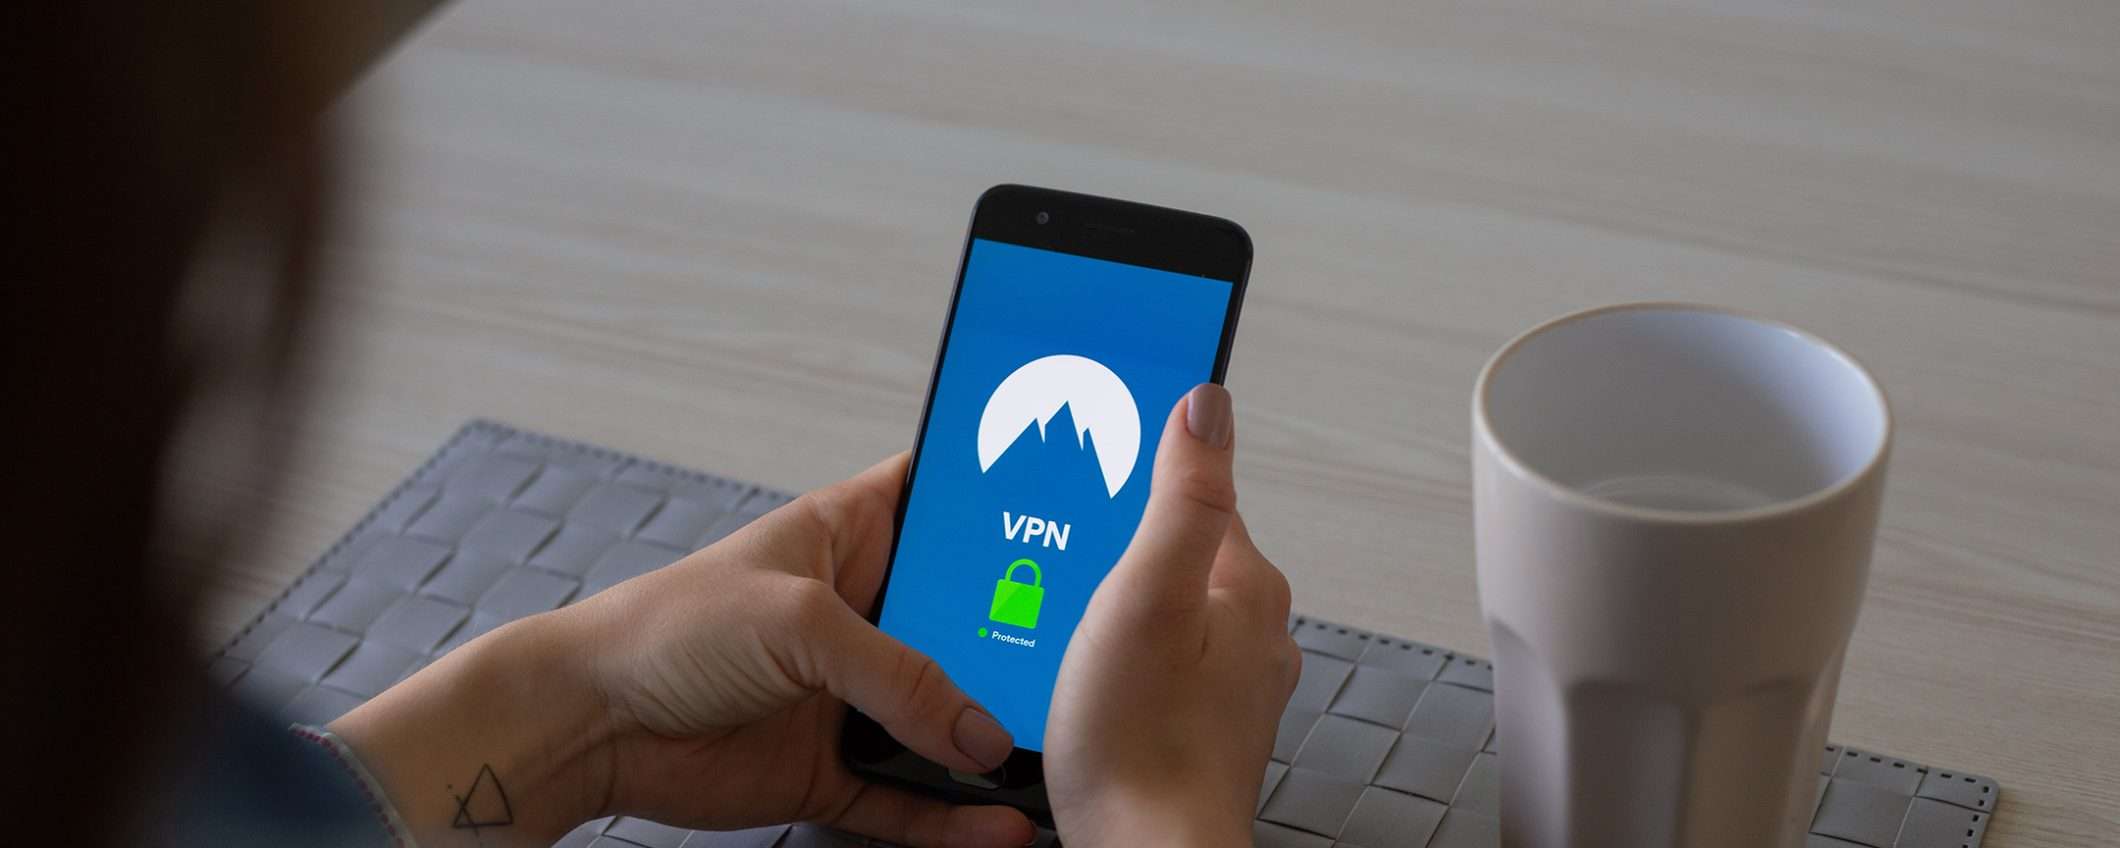 Crittografia e protocolli di sicurezza di una VPN